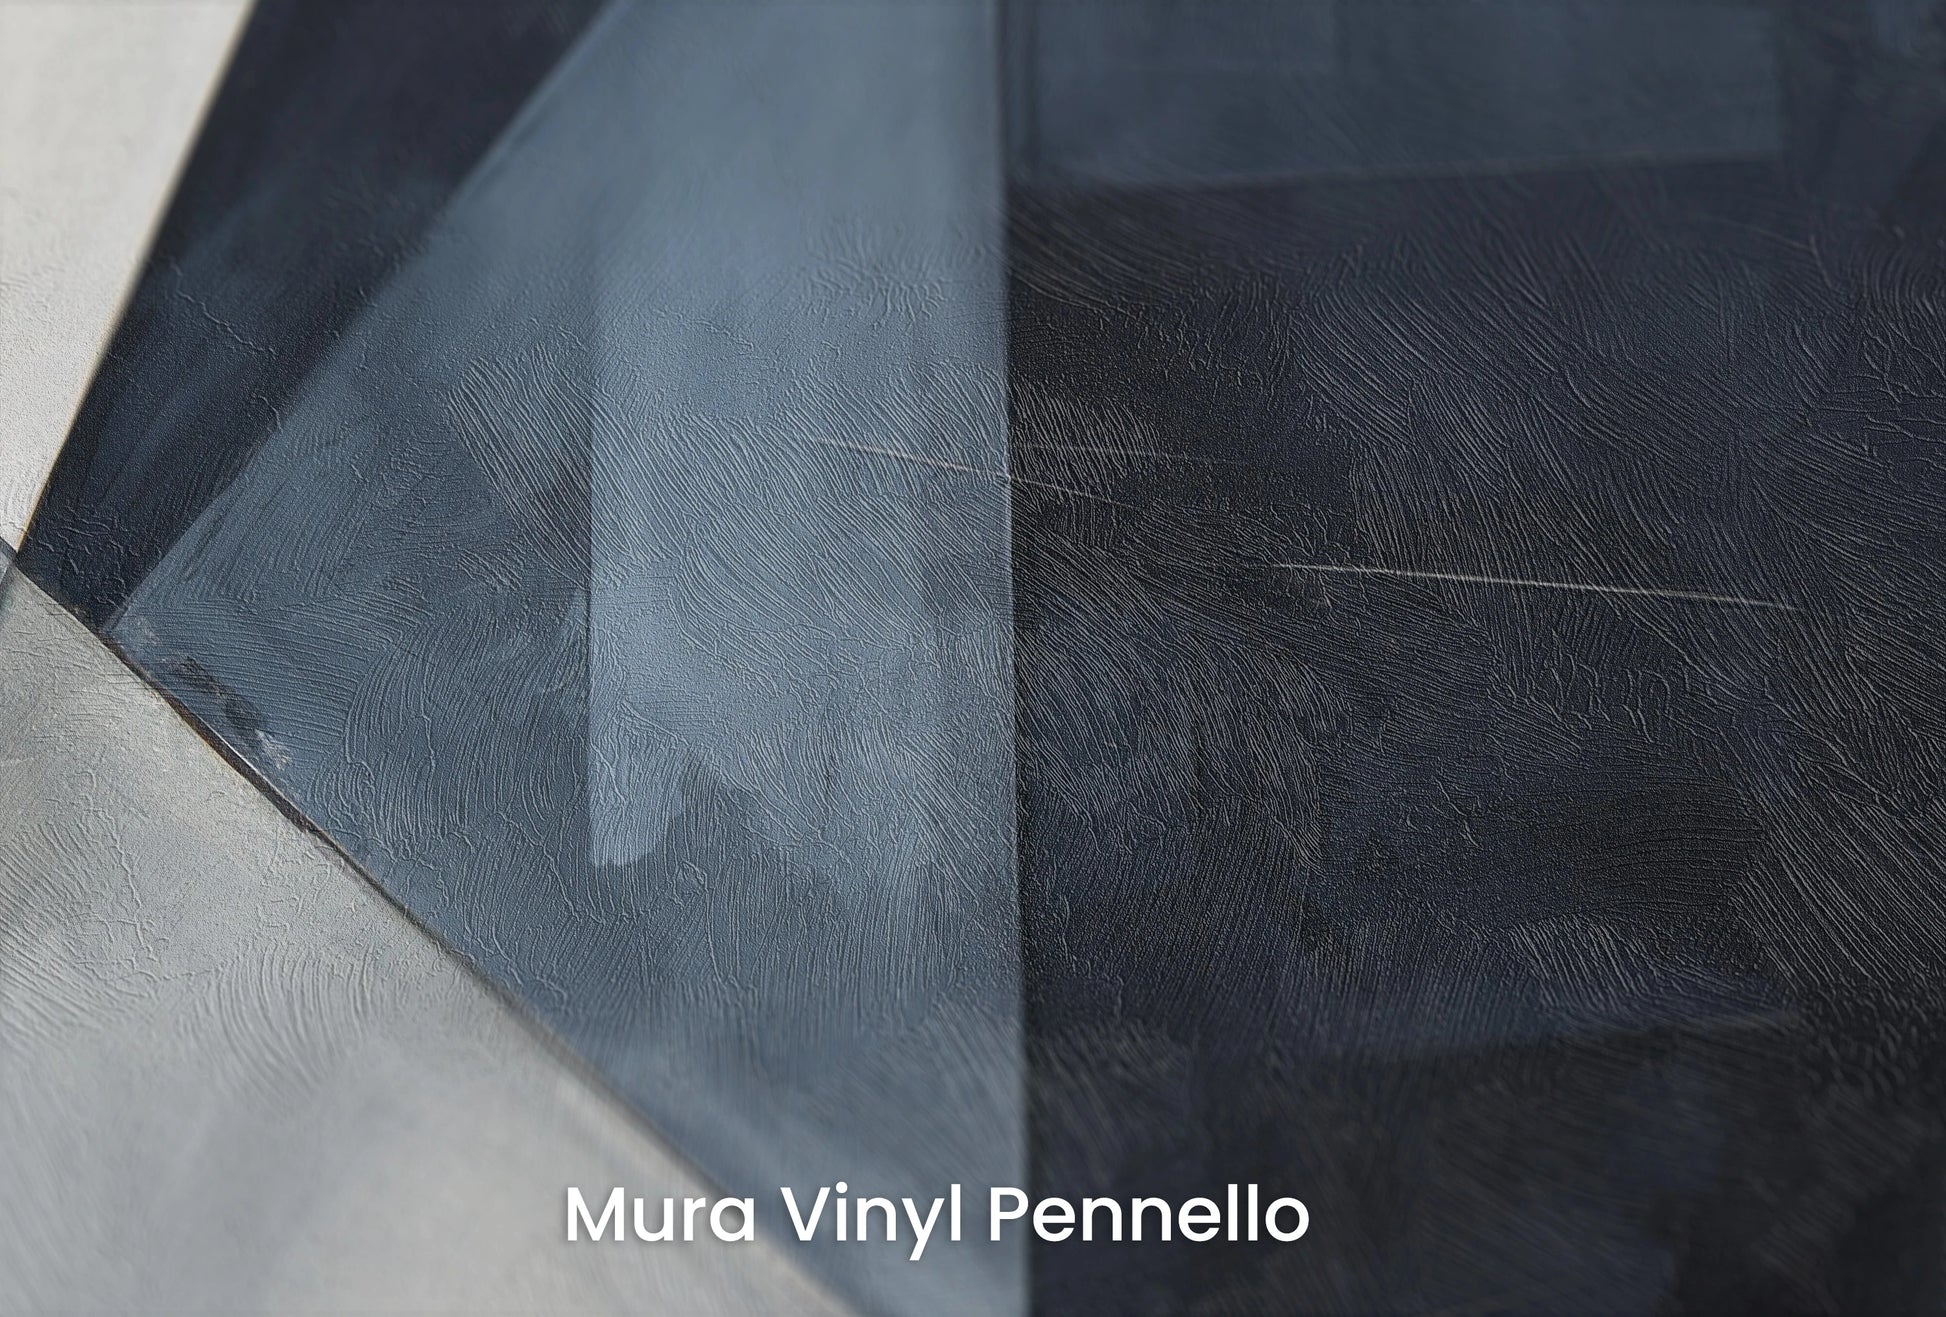 Zbliżenie na artystyczną fototapetę o nazwie Monochrome Motion na podłożu Mura Vinyl Pennello - faktura pociągnięć pędzla malarskiego.